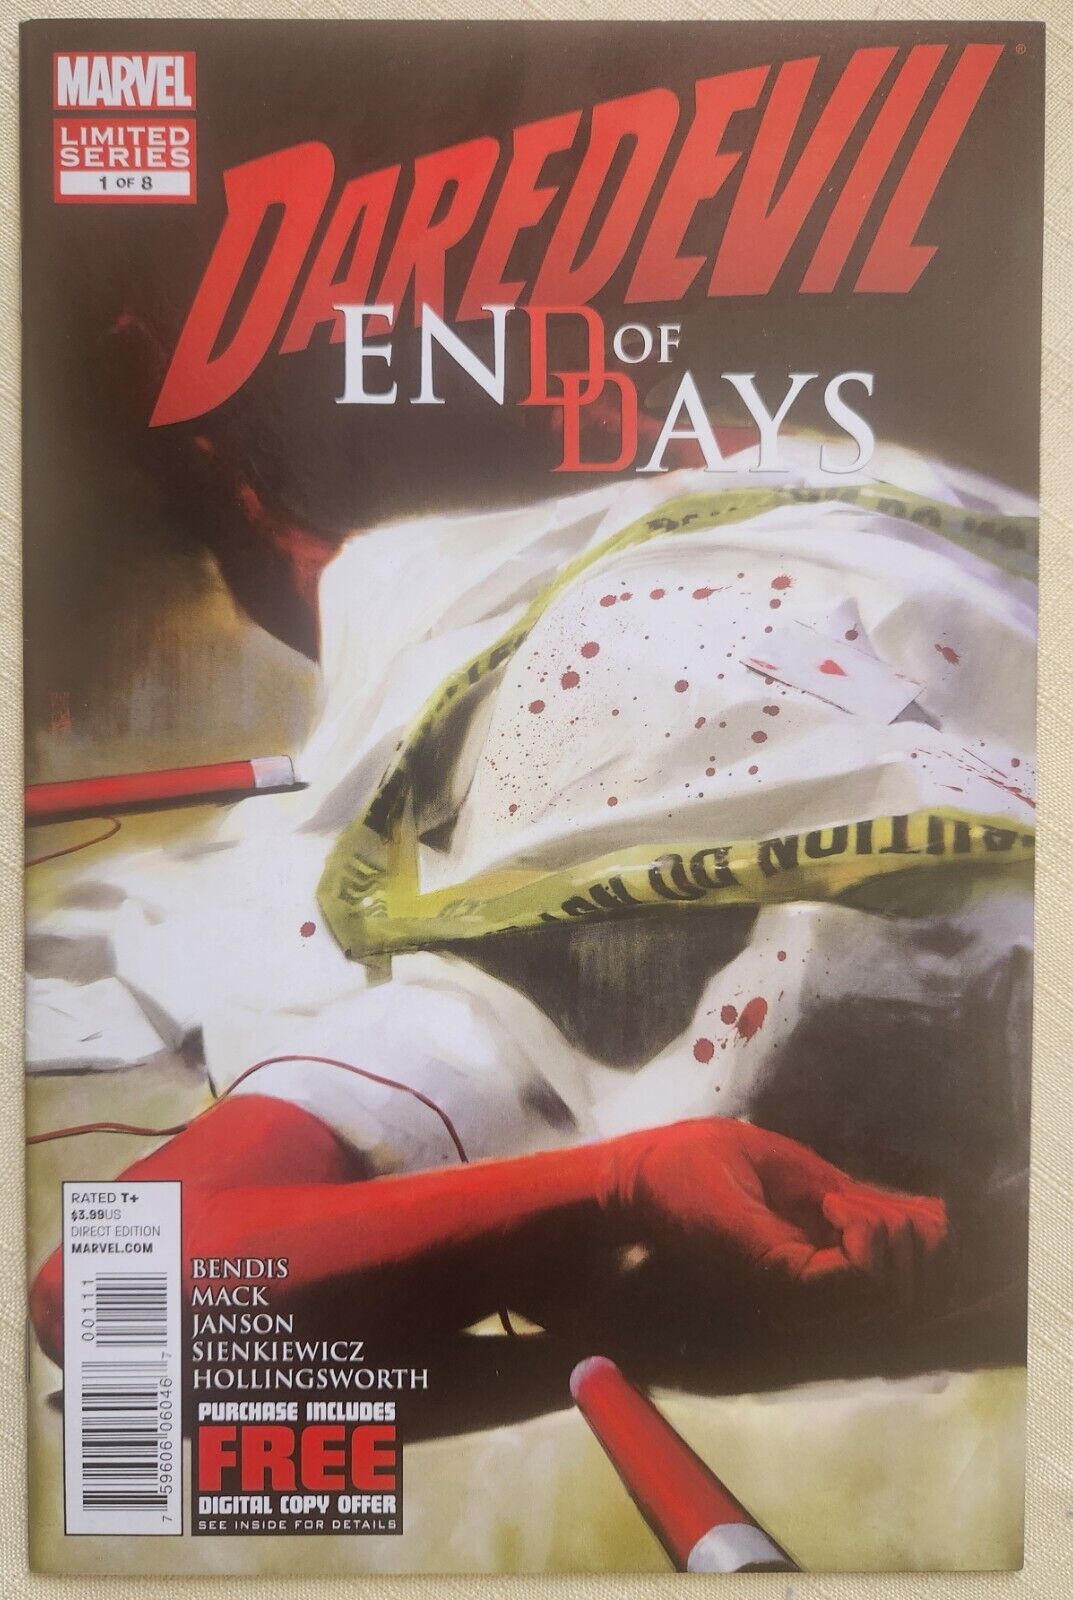 DAREDEVIL END OF DAYS #1 (2012) - Bendis, Mack, Janson, Sienkiewicz - Marvel